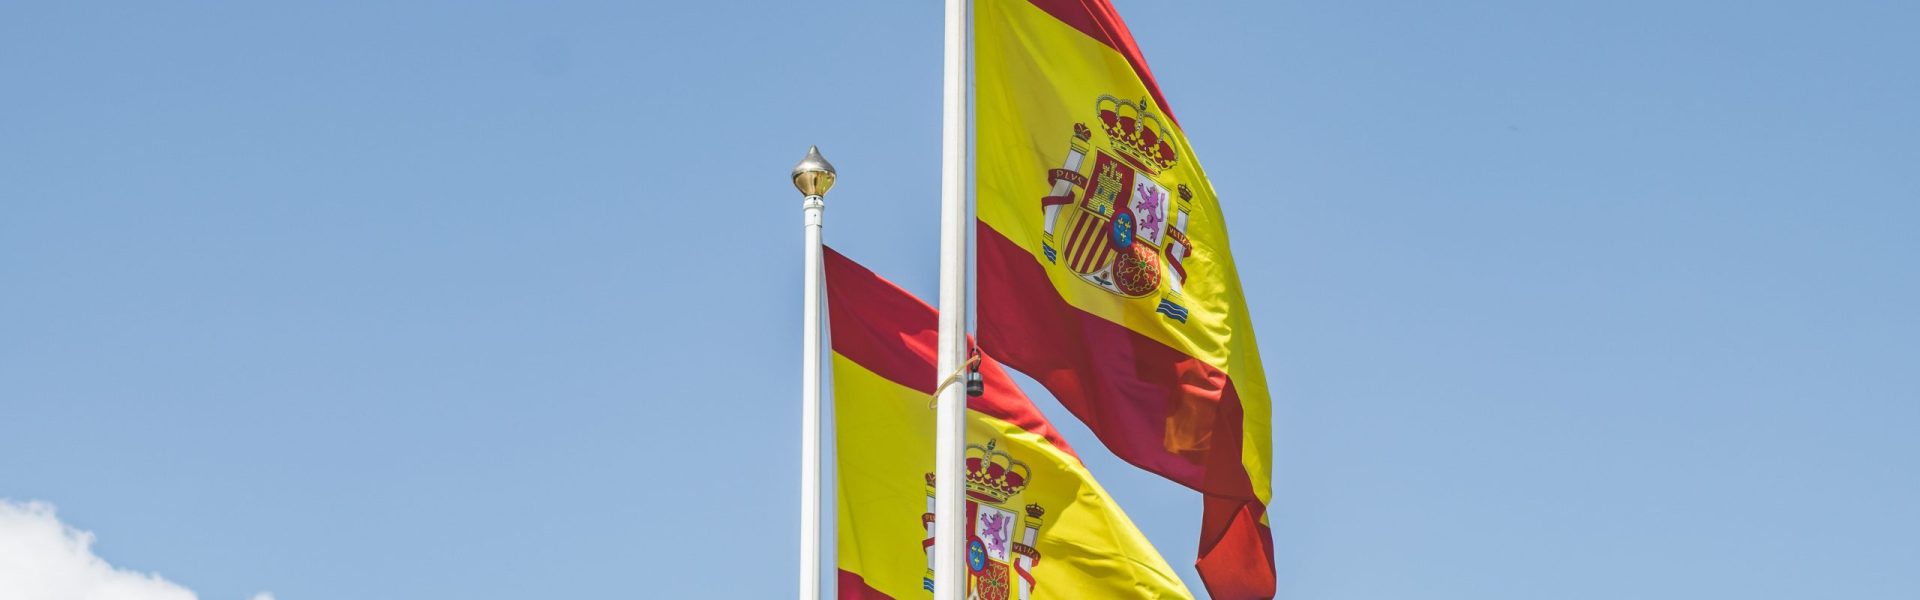 bonjour_barcelona_spanish_flag